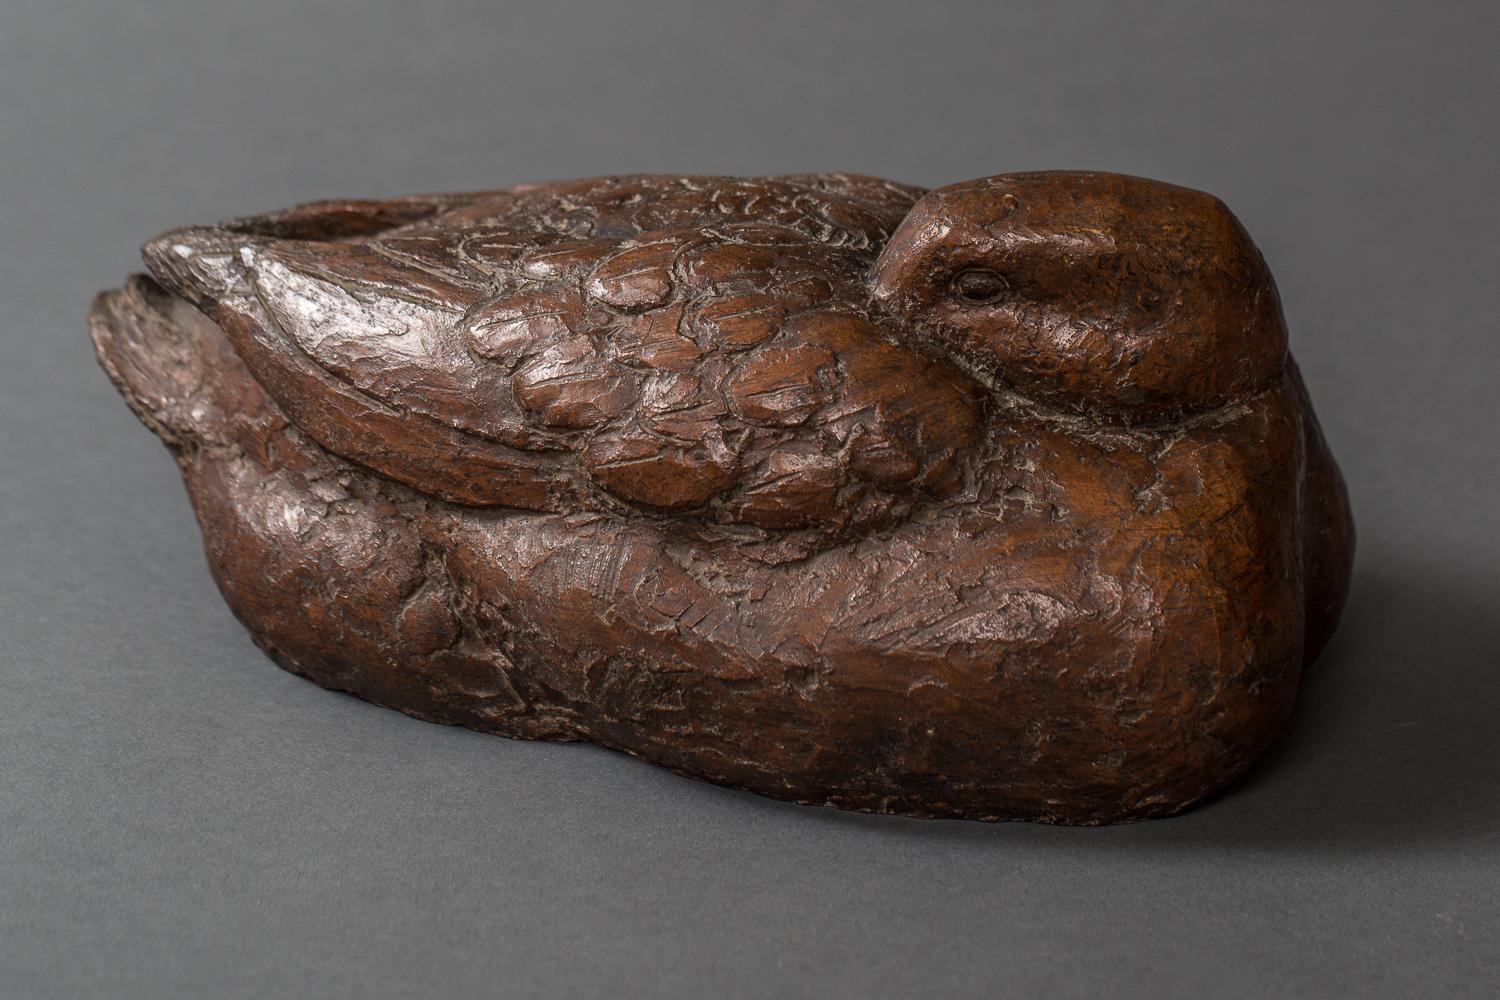 Skulptur einer Ente aus der Showa-Periode (1926-1989), die ihren Kopf in die Flügel gesteckt hat. Trockenlack oder Kanshitsu ist ein Verfahren, bei dem mit Lack getränkte Stoffe über eine Form geschichtet und bearbeitet werden. Signiert vom Künstler